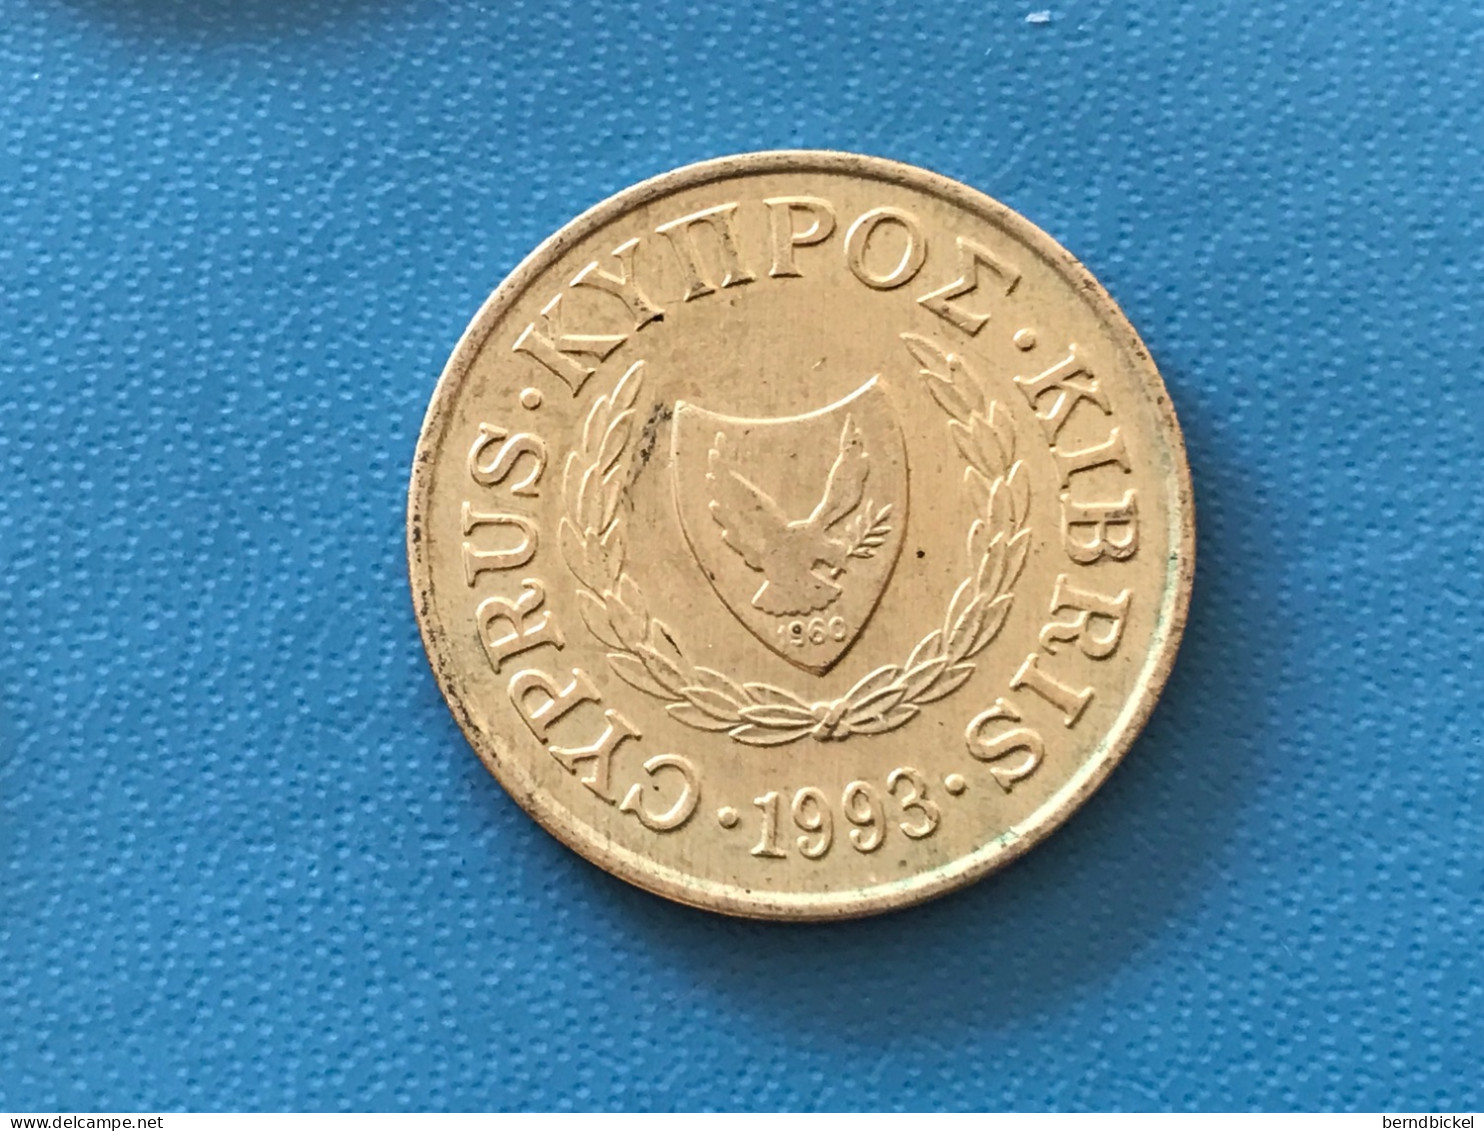 Münze Münzen Umlaufmünze Zypern 5 Cent 1993 - Zypern